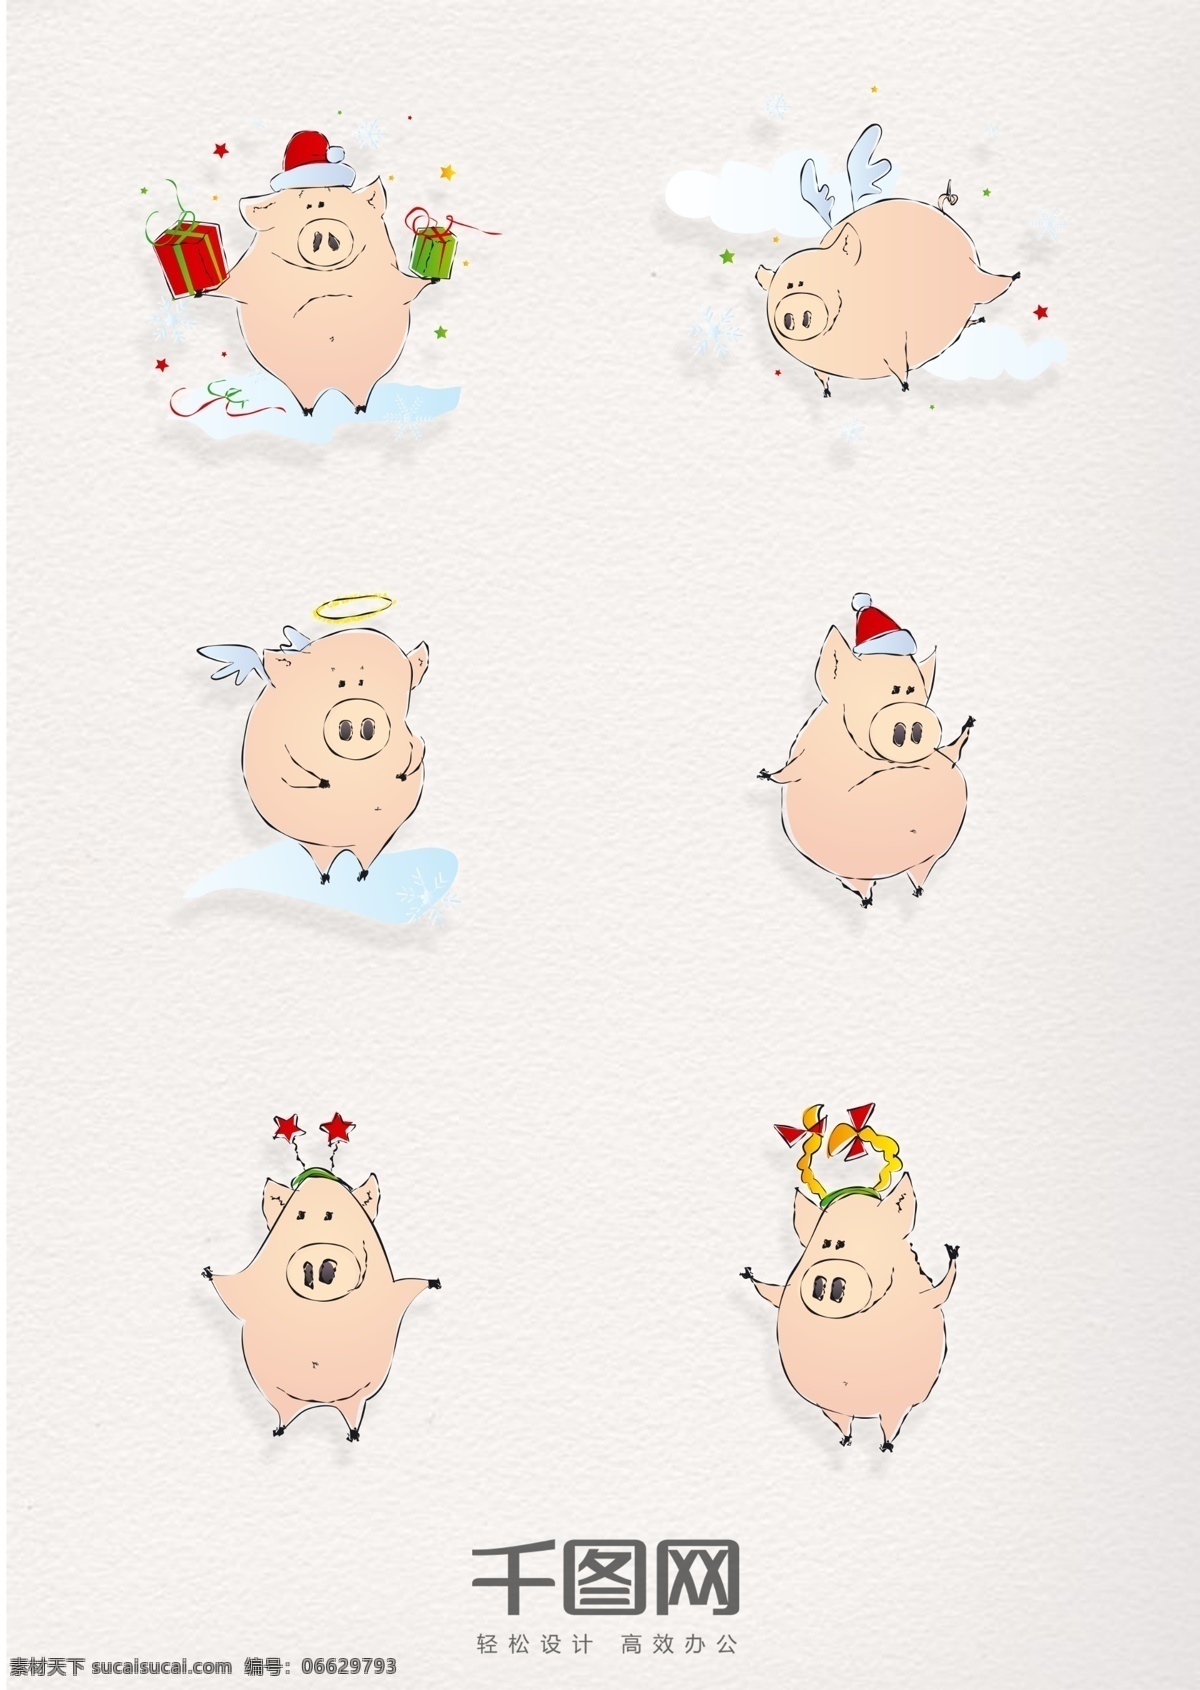 卡通漫画 猪 元素 圣诞 类 图标 卡通 漫画 可爱 小猪 猪元素 圣诞节 礼物 圣诞元素